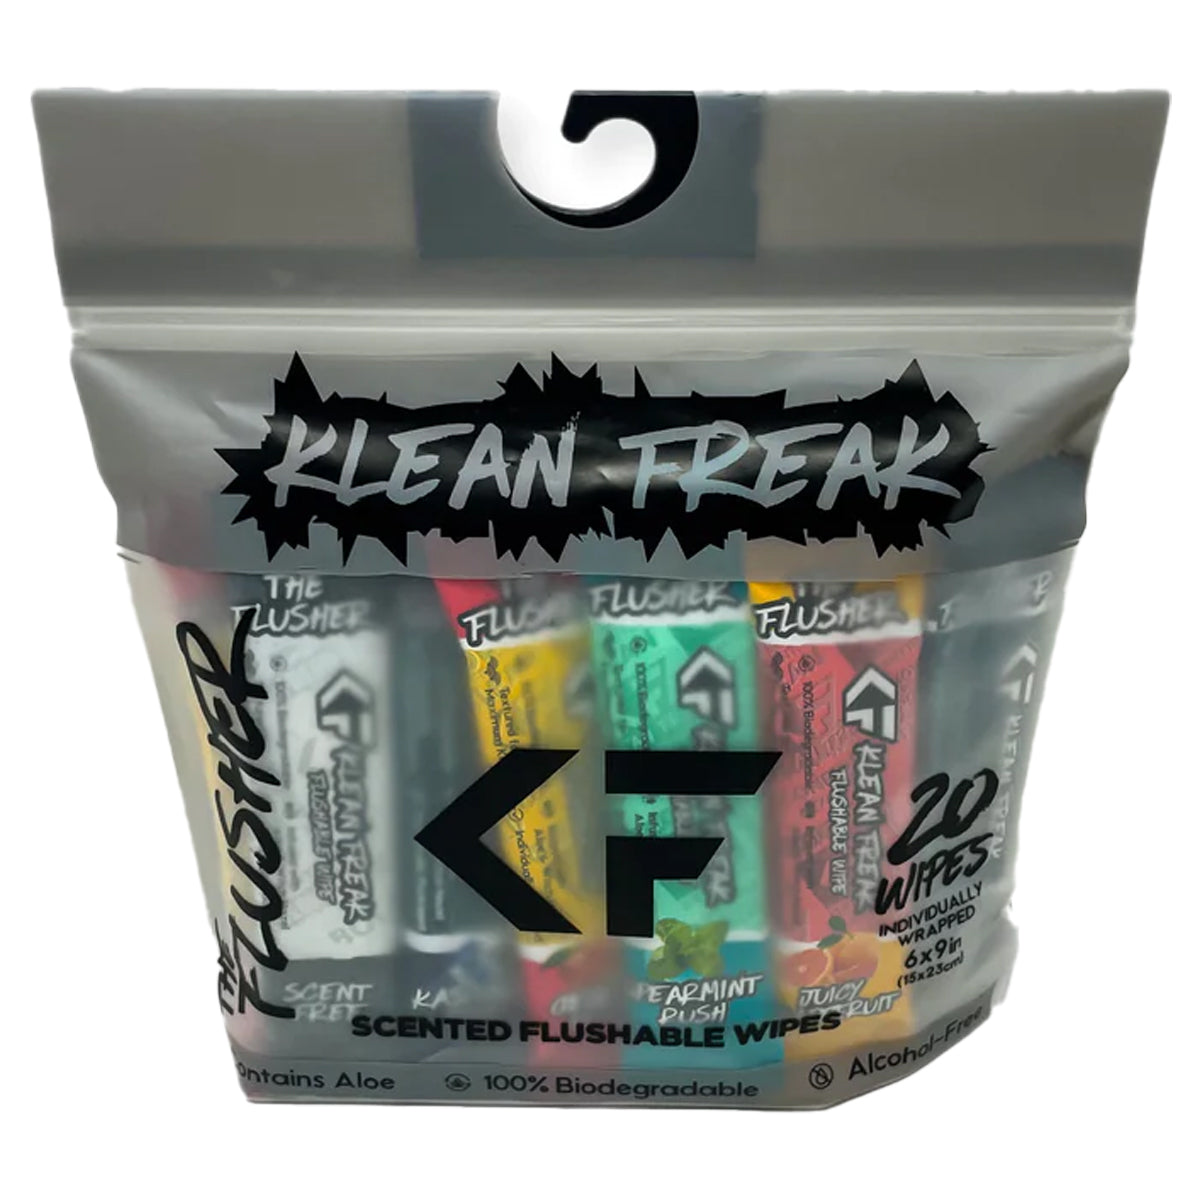 Klean Freak The Flusher in  by GOHUNT | Klean Freak - GOHUNT Shop